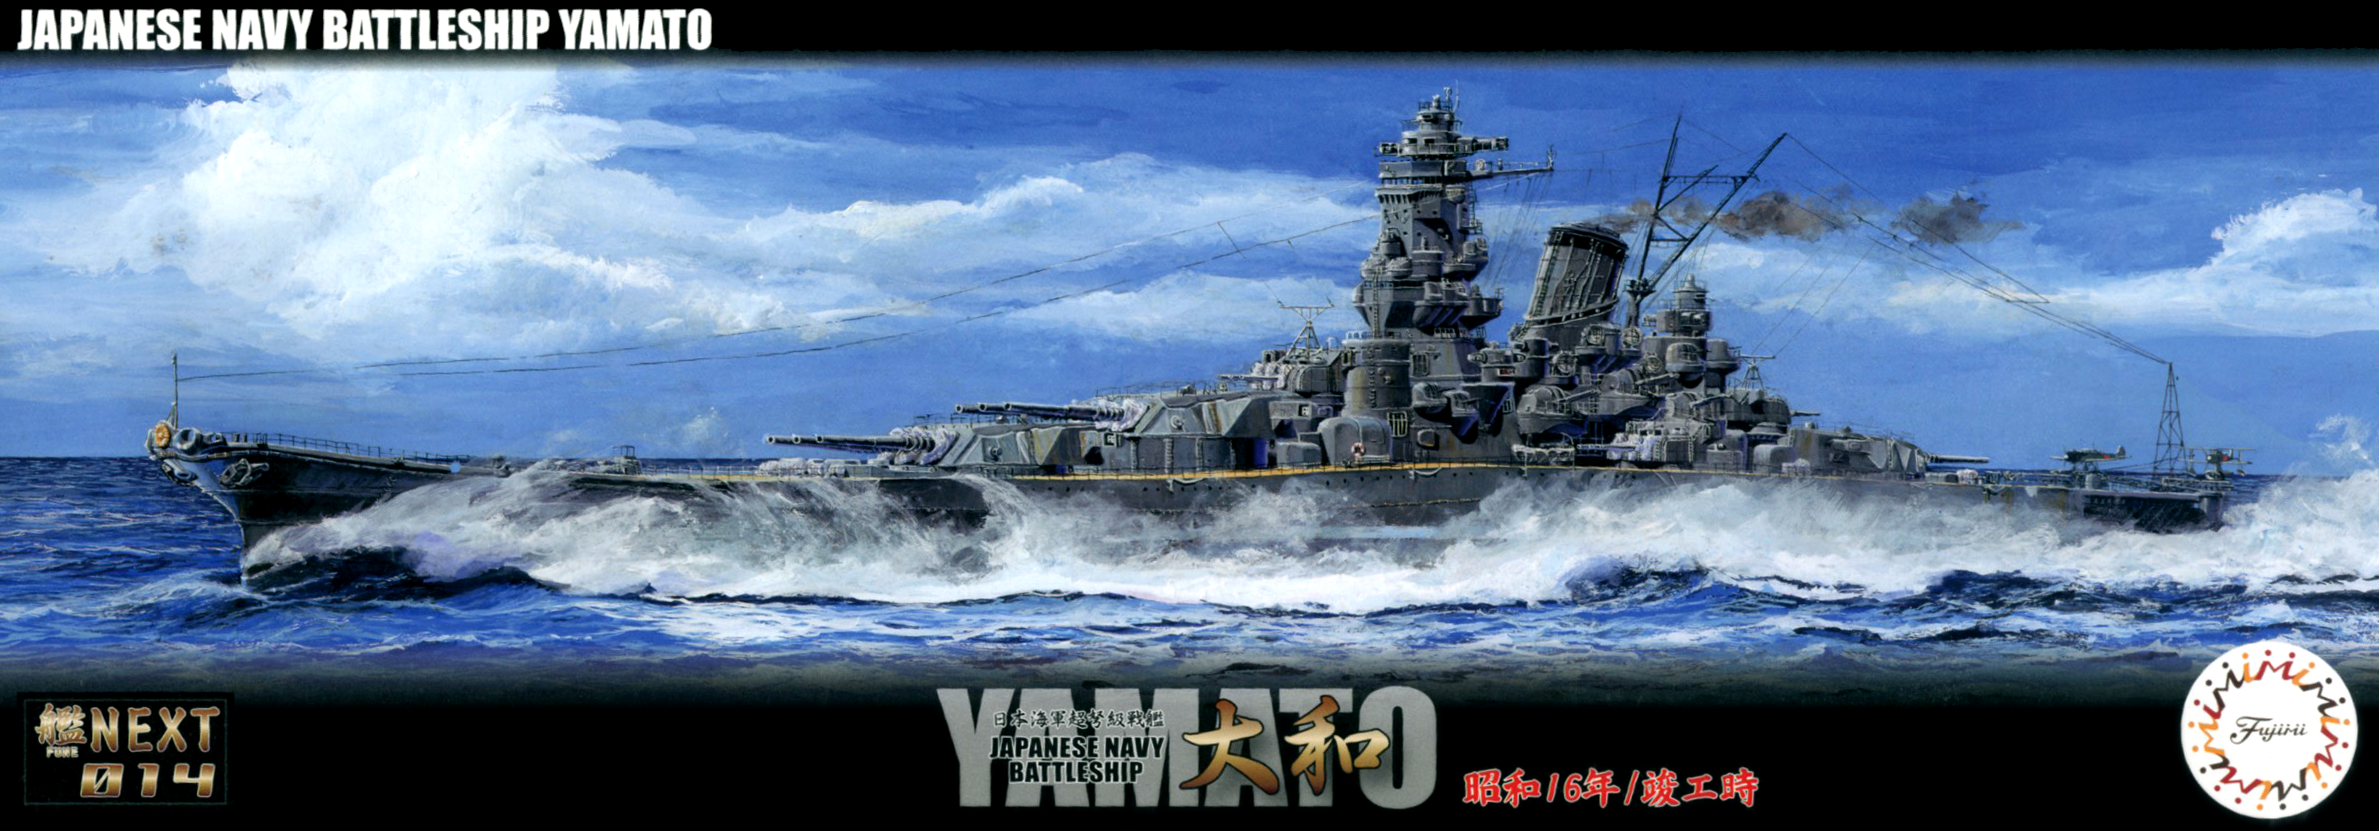 1/700 日本海軍戦艦 大和 昭和16年/竣工時